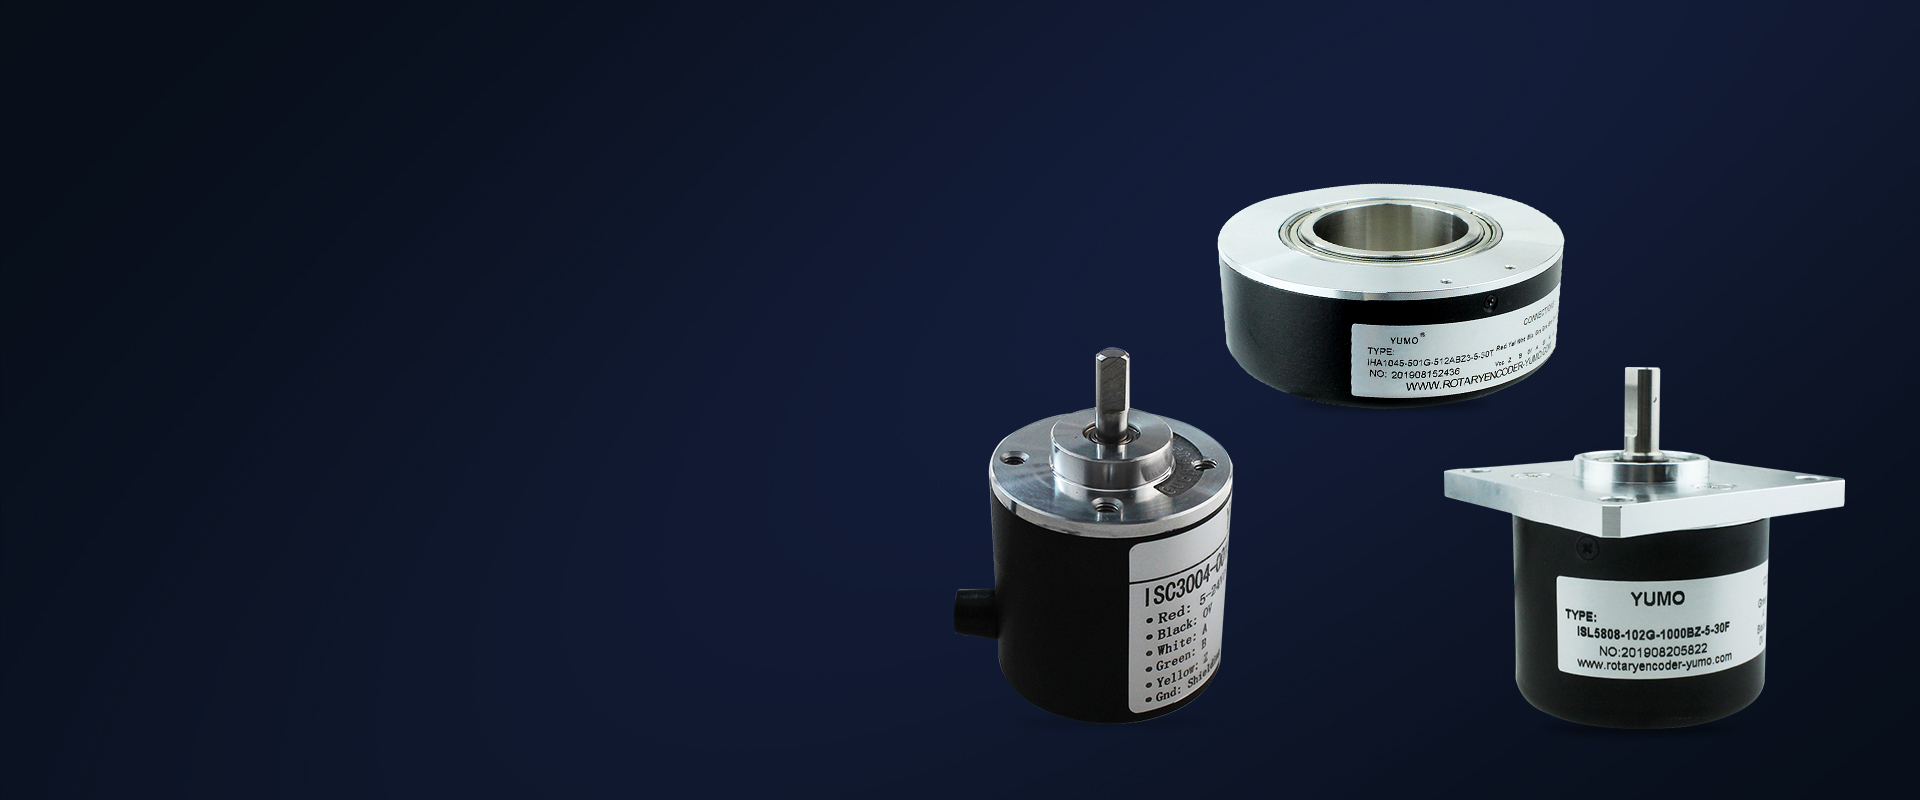 LM8-3001NC cylinder sensor